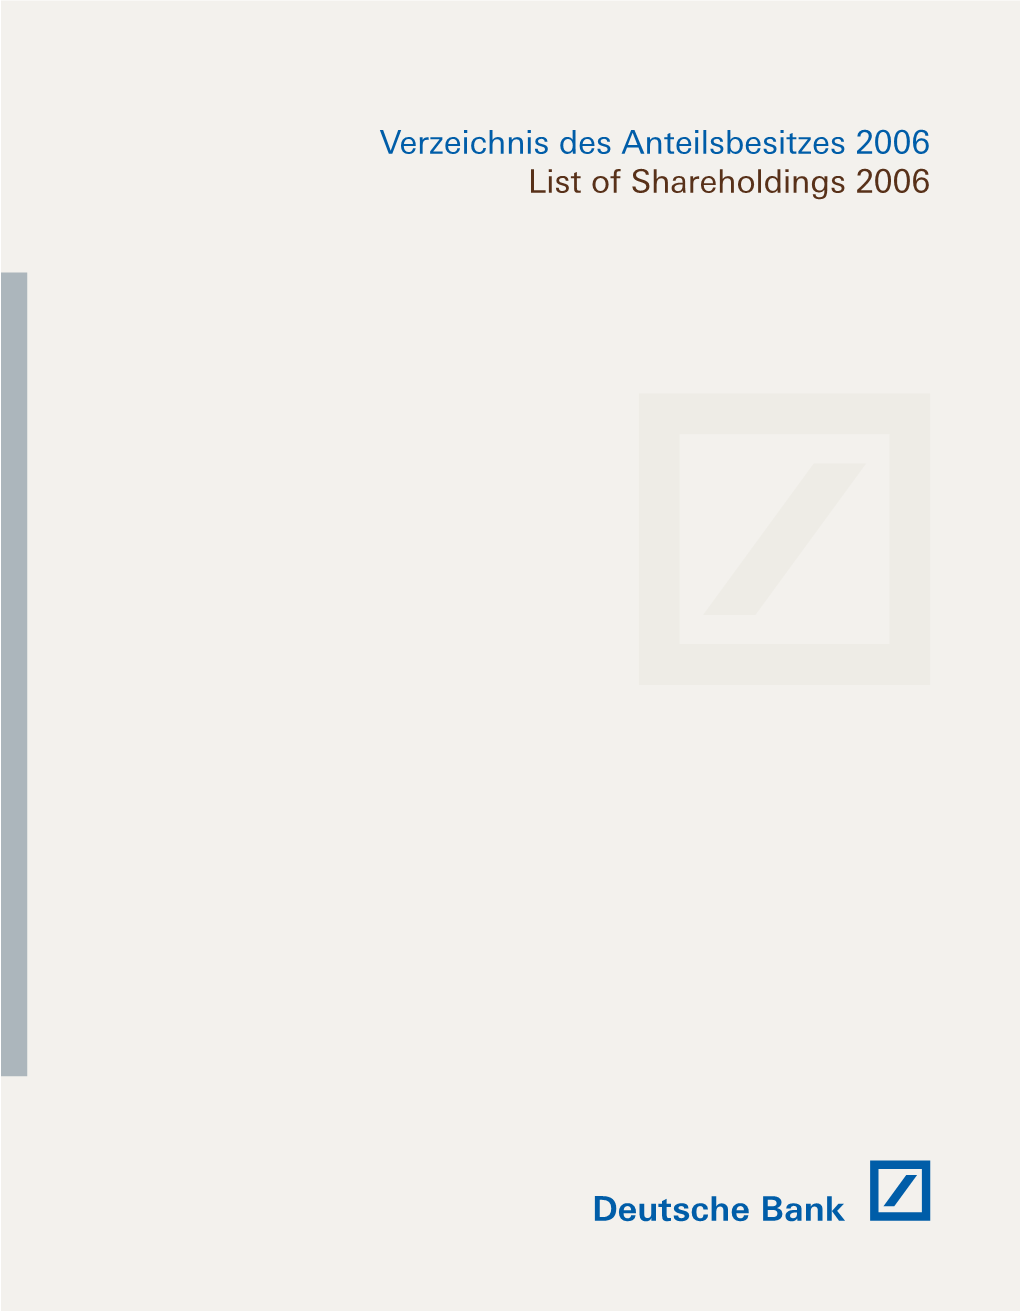 List of Shareholdings 2006